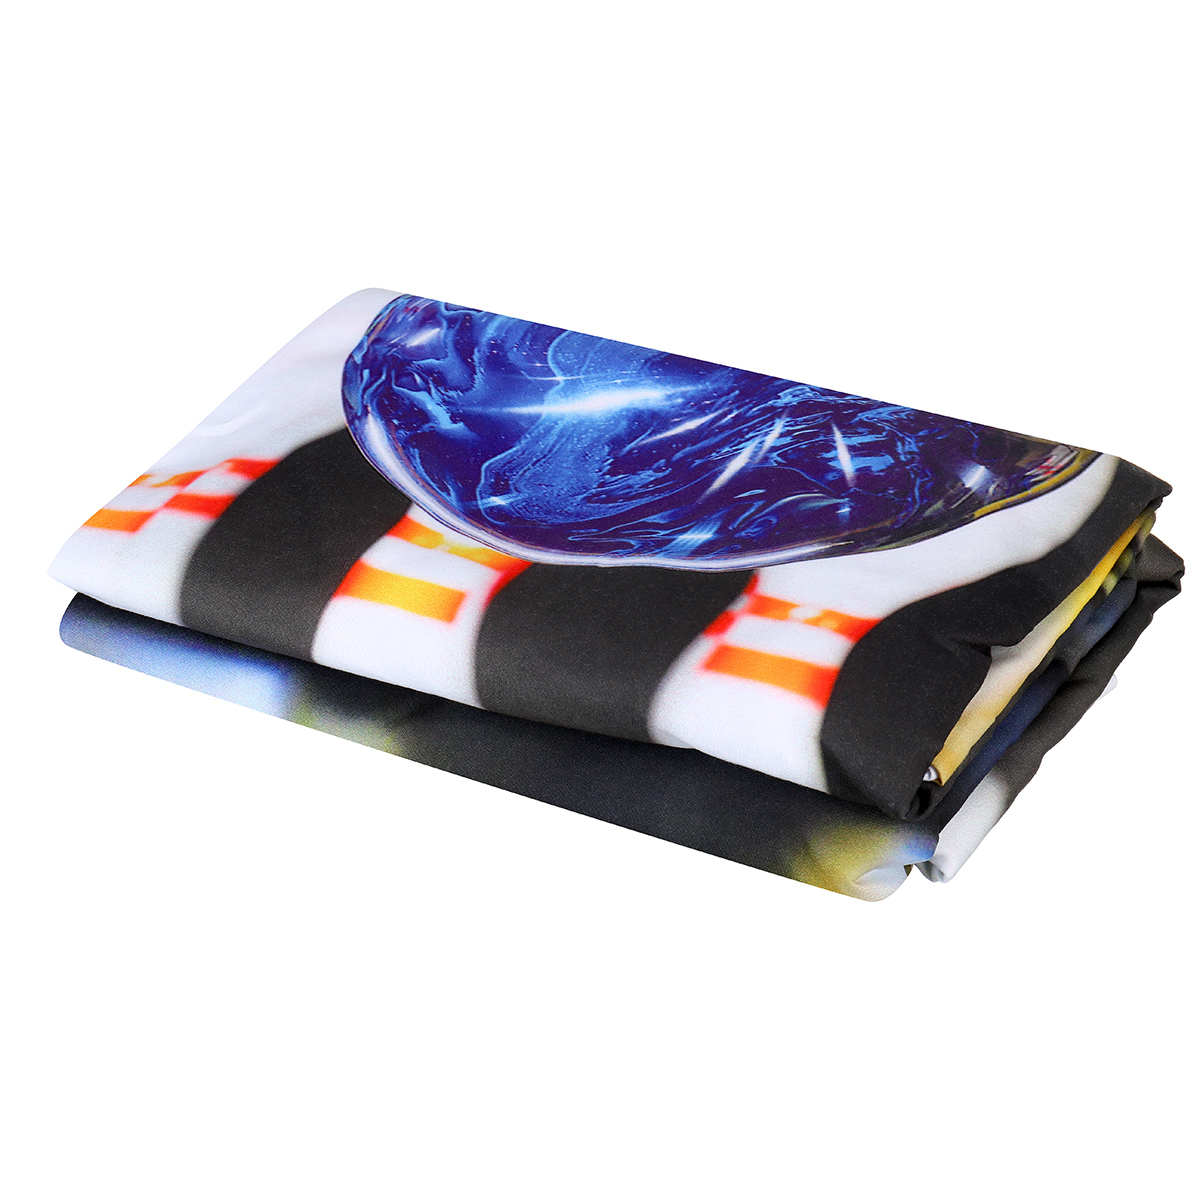 3D-Printed-Football-Basketball-Bowling-GA-Bedding-Set-Bedlinen-Duvet-Cover-Pillowcases-for-Bedding-S-1788703-19